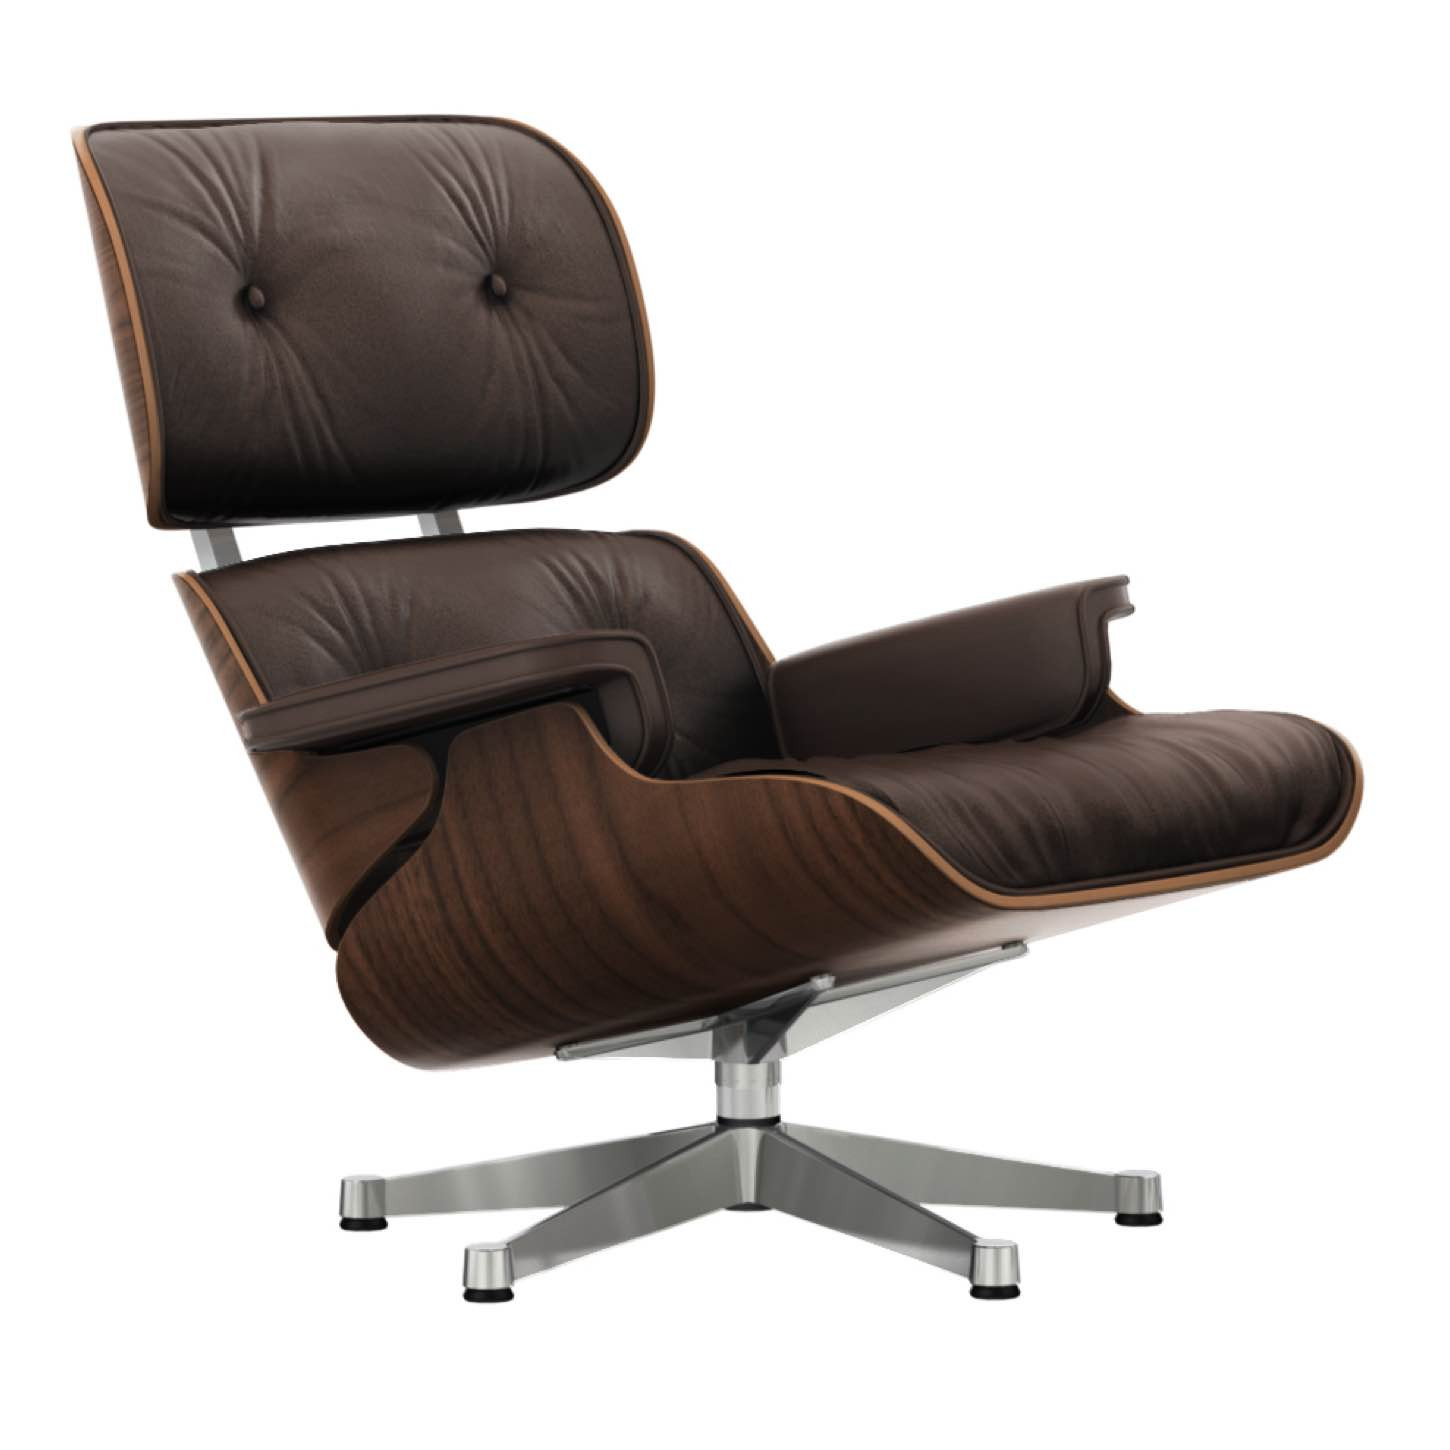 bevind zich Erfgenaam eeuw Vitra Eames Lounge Chair zwart gepigmenteerd notenhout